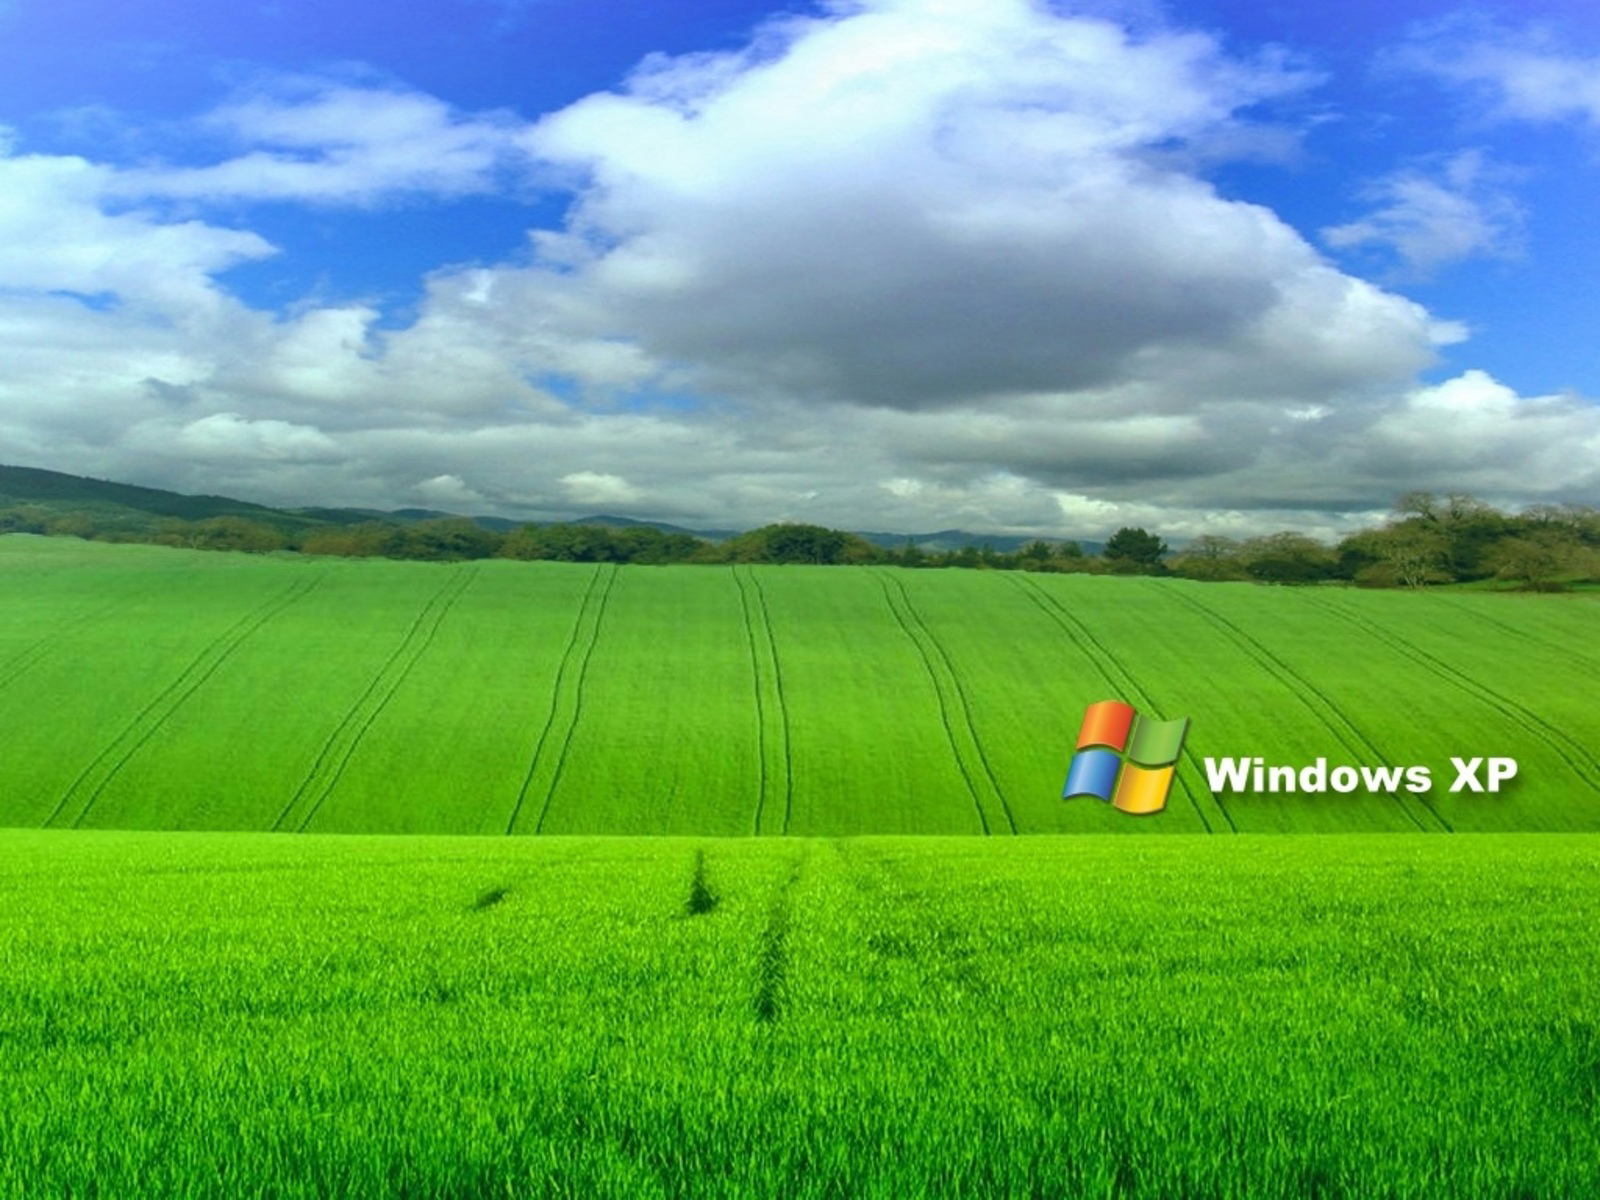 Khi nghĩ đến hệ điều hành Windows XP, hình nền là một trong những thứ đầu tiên mà chúng ta nghĩ đến. Với sự kết hợp tuyệt đẹp giữa màu xanh và bé tông khác, hình ảnh rực rỡ của đồng cỏ xanh trên hình nền Windows XP sẽ làm bạn say đắm ngay từ cái nhìn đầu tiên.